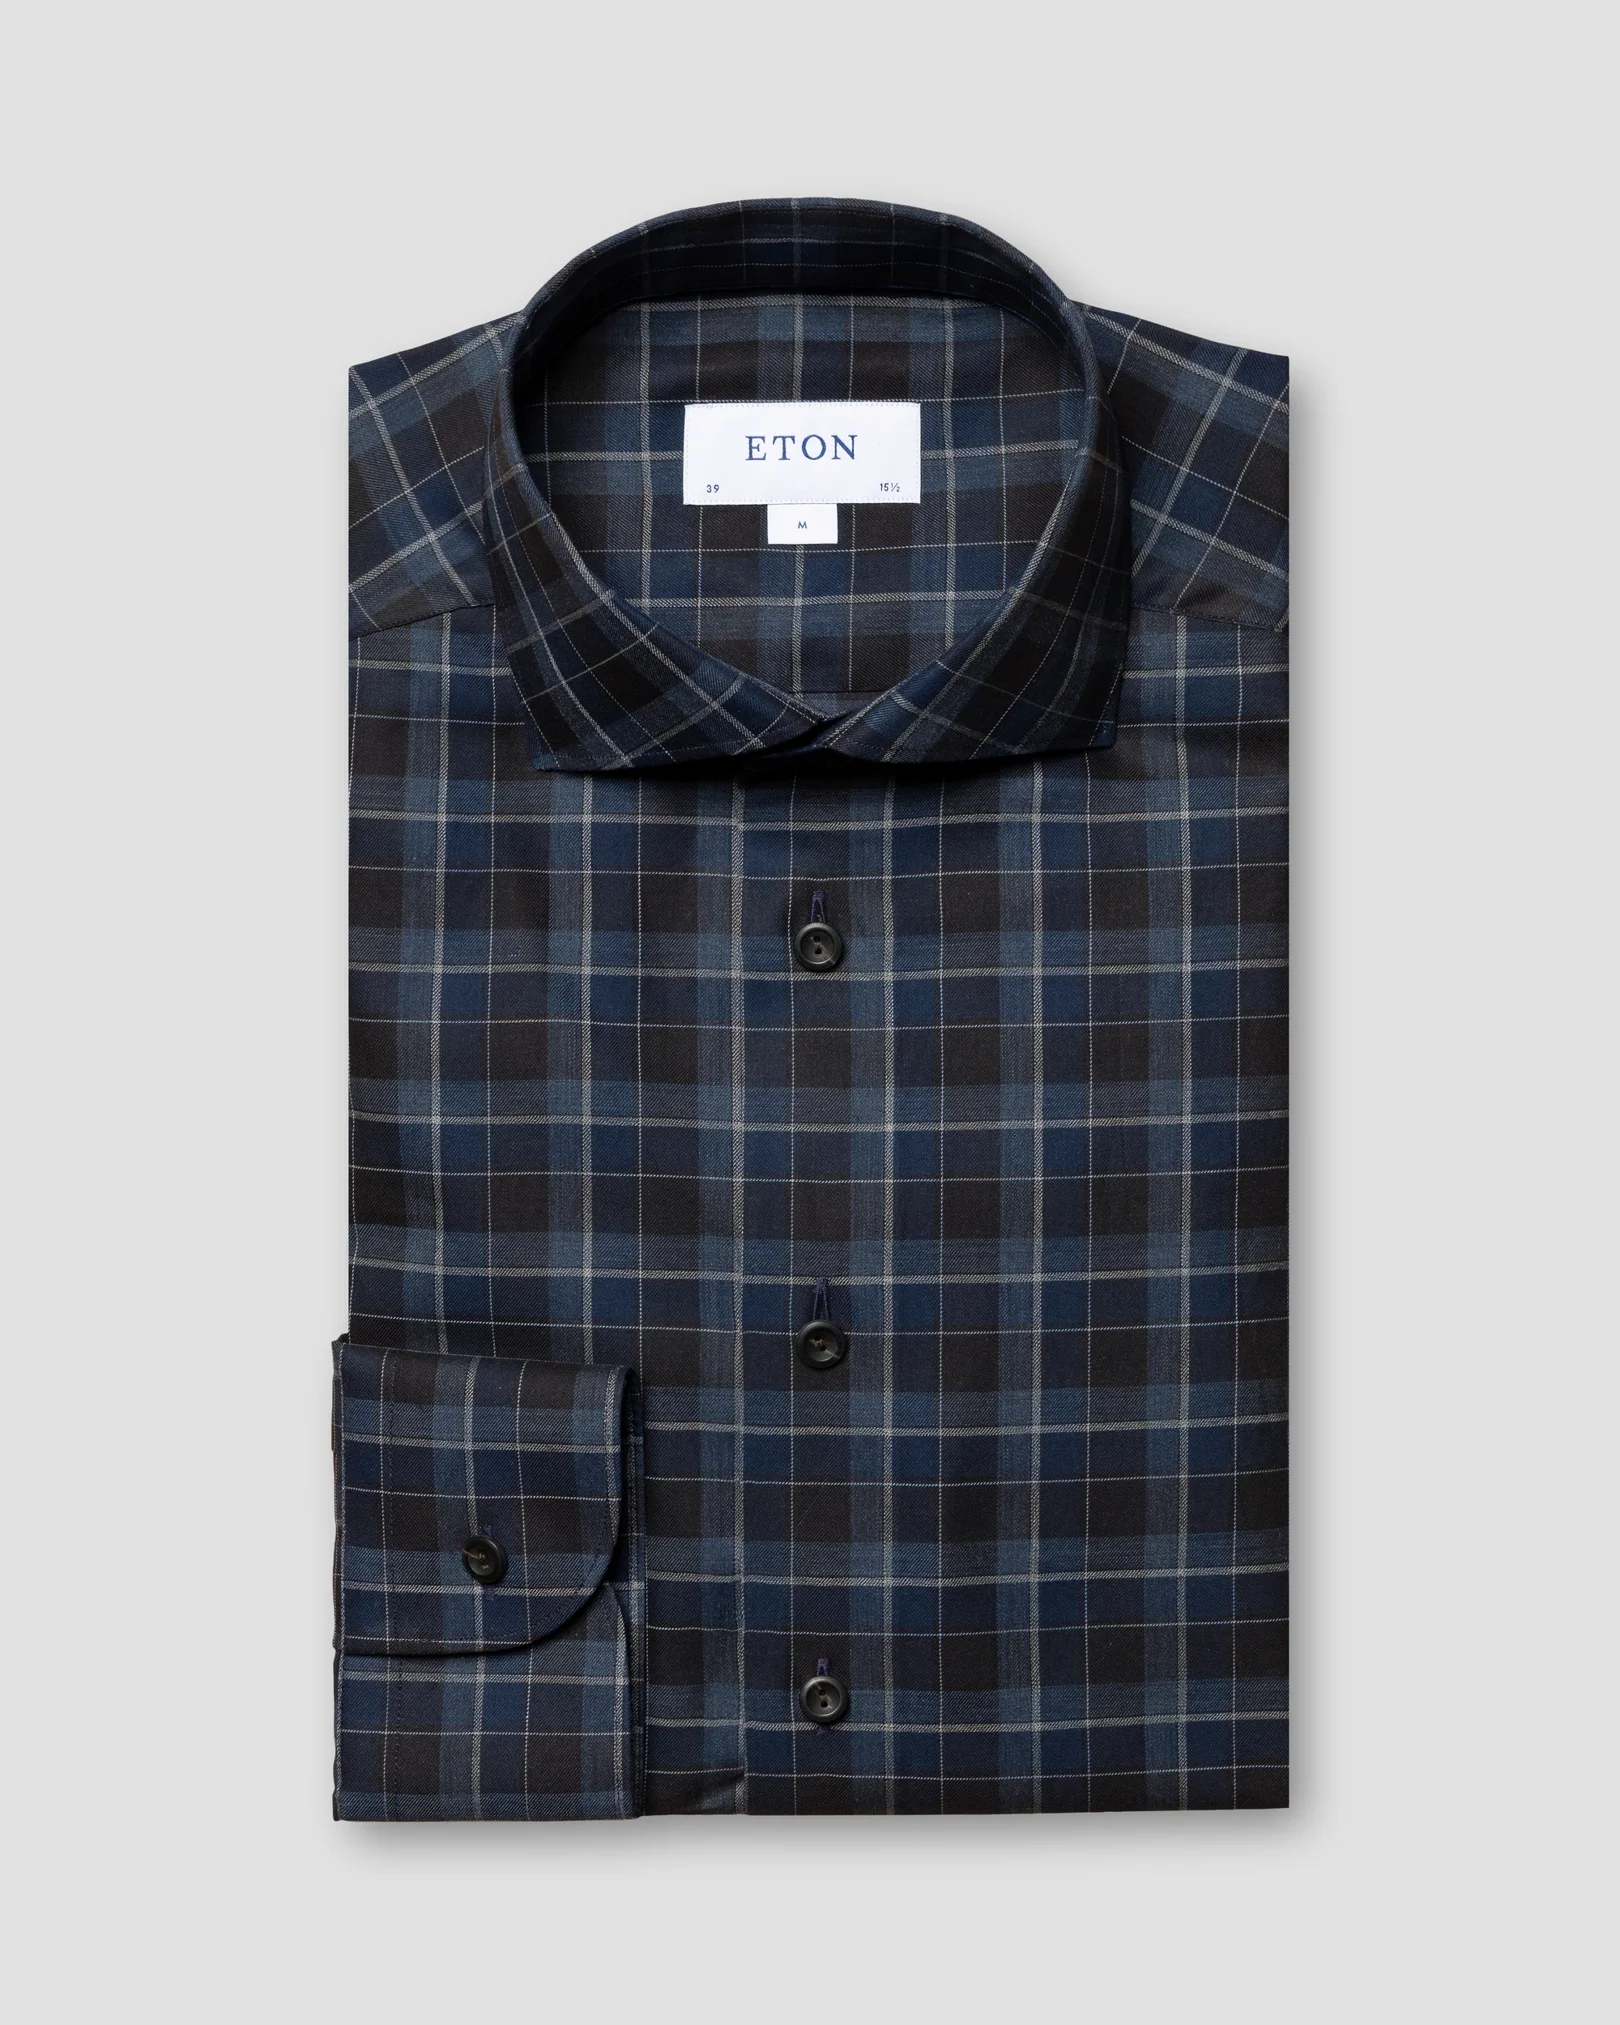 Eton - navy blue flannel shirt wide spread